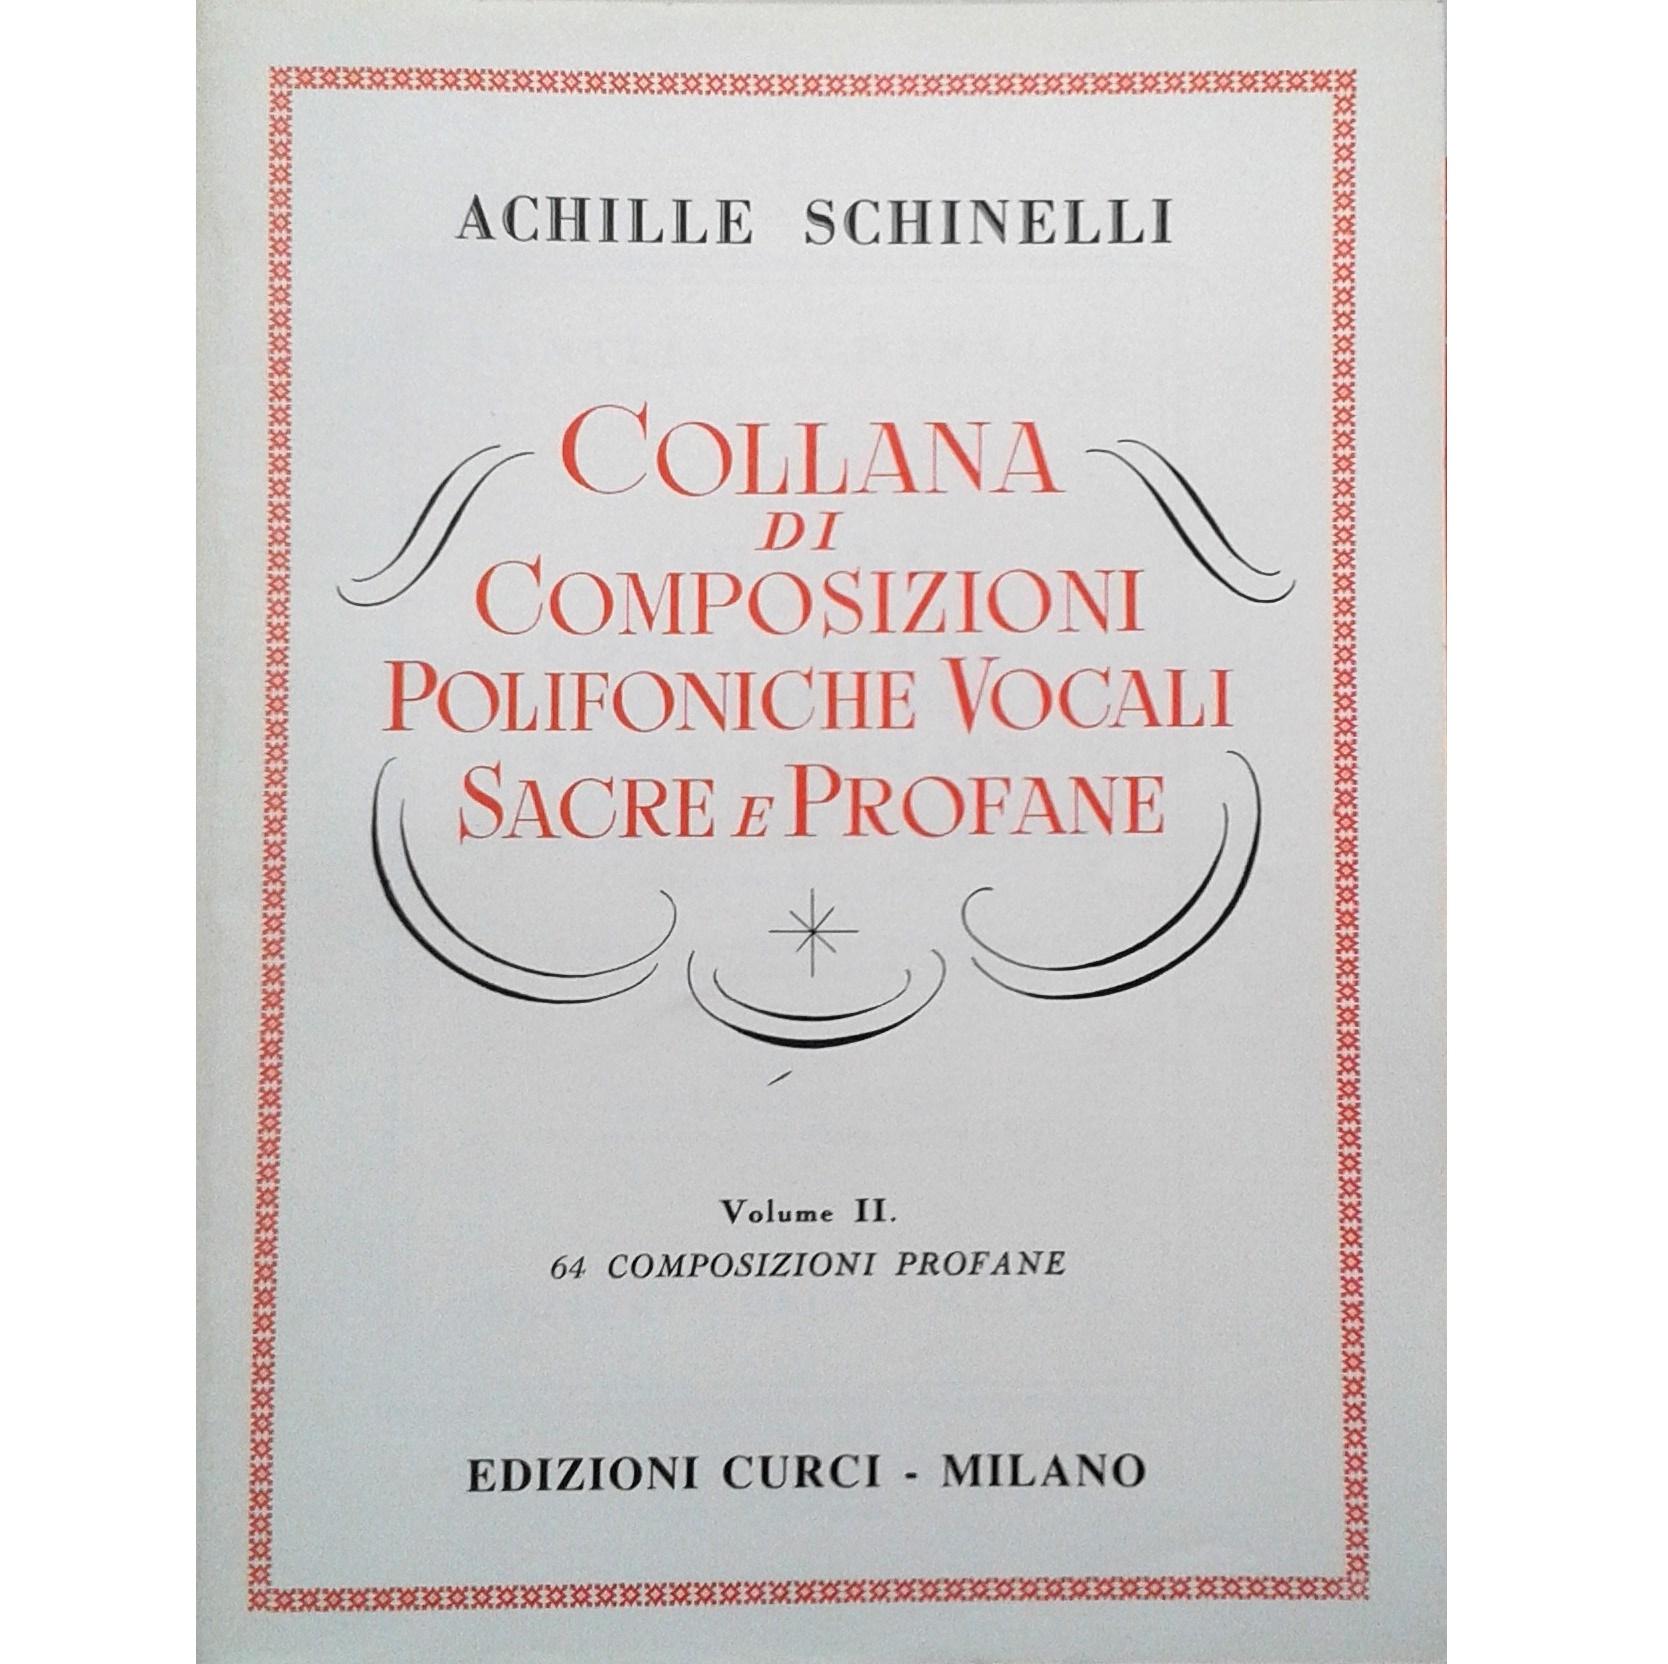 Achille Schinelli Collana di Composizioni Polifoniche Vocali Sacre e Profane Volume II - Edizioni Curci